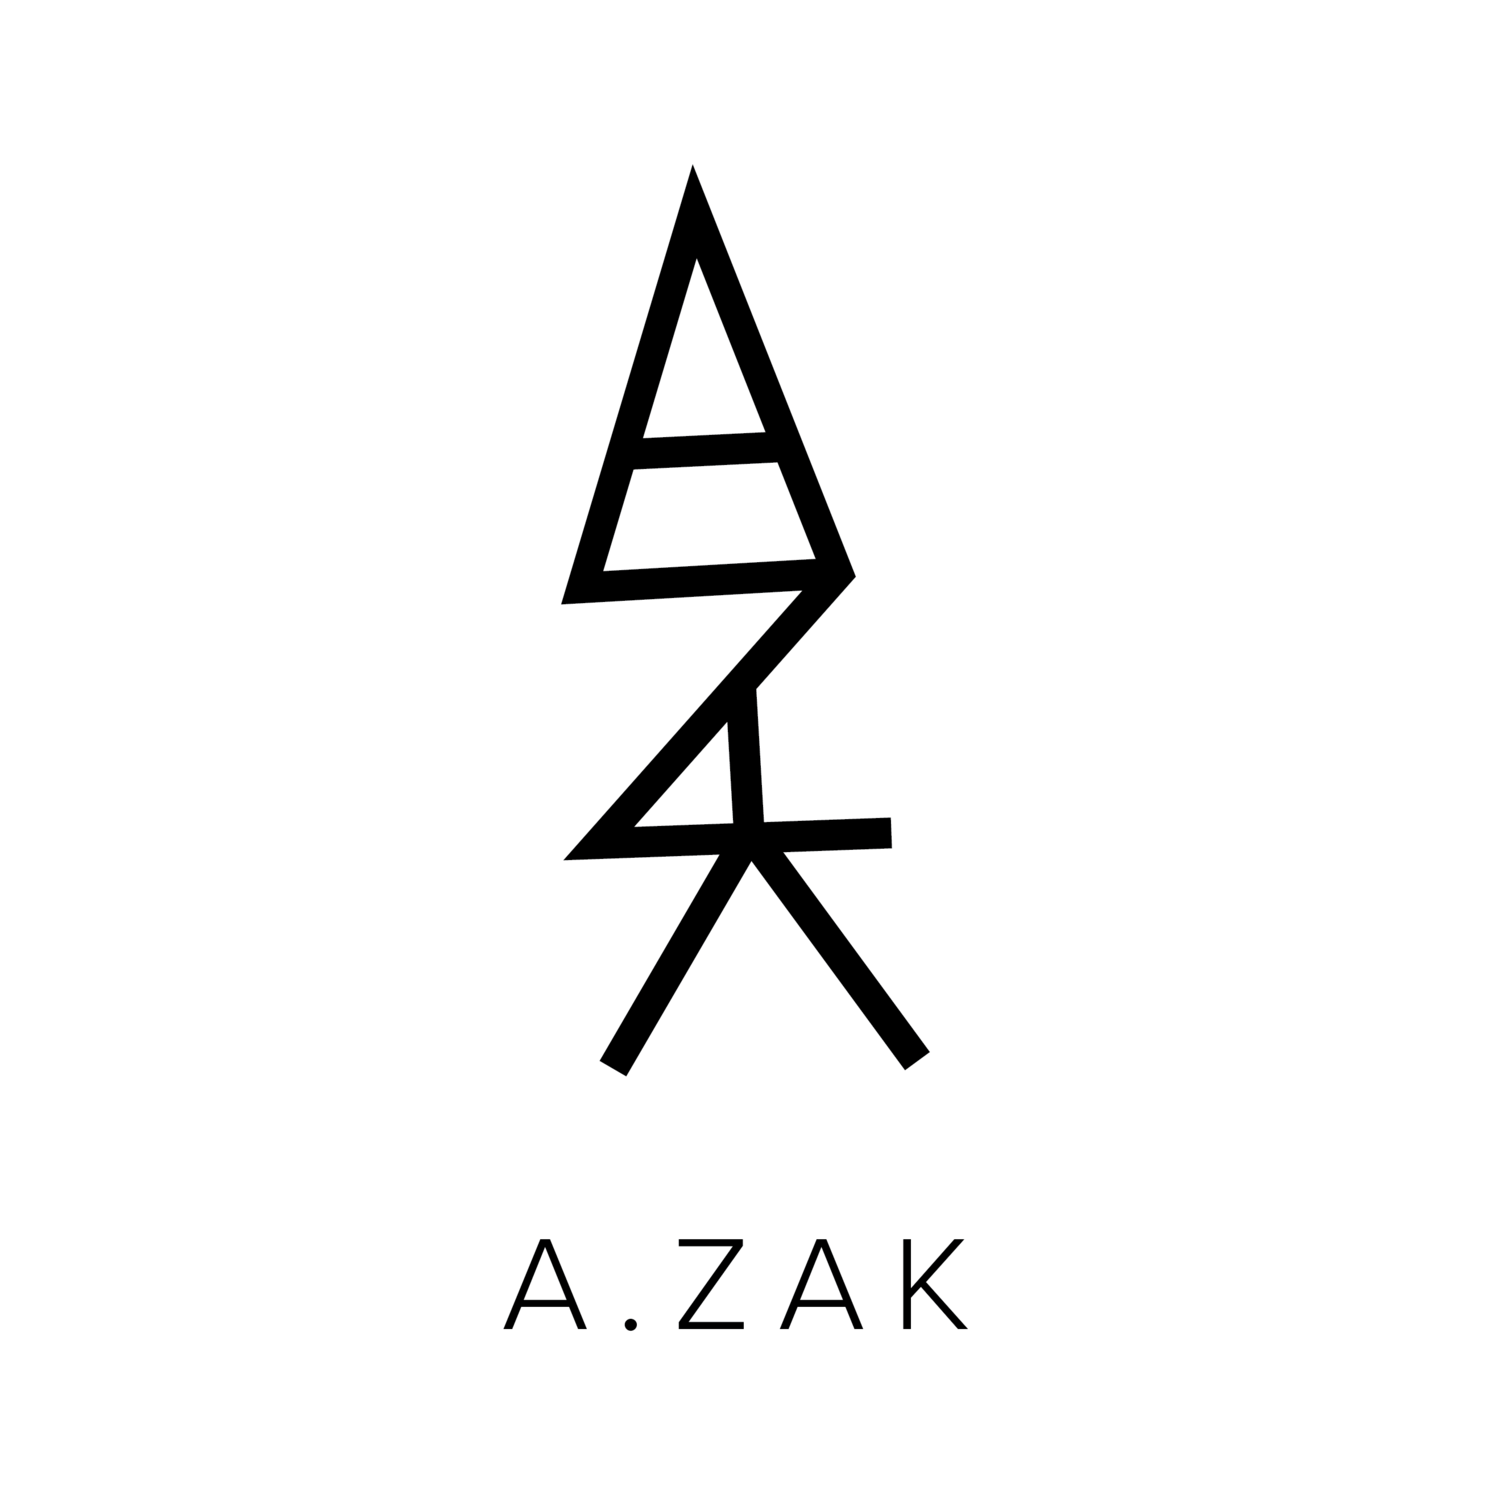 A. Zak